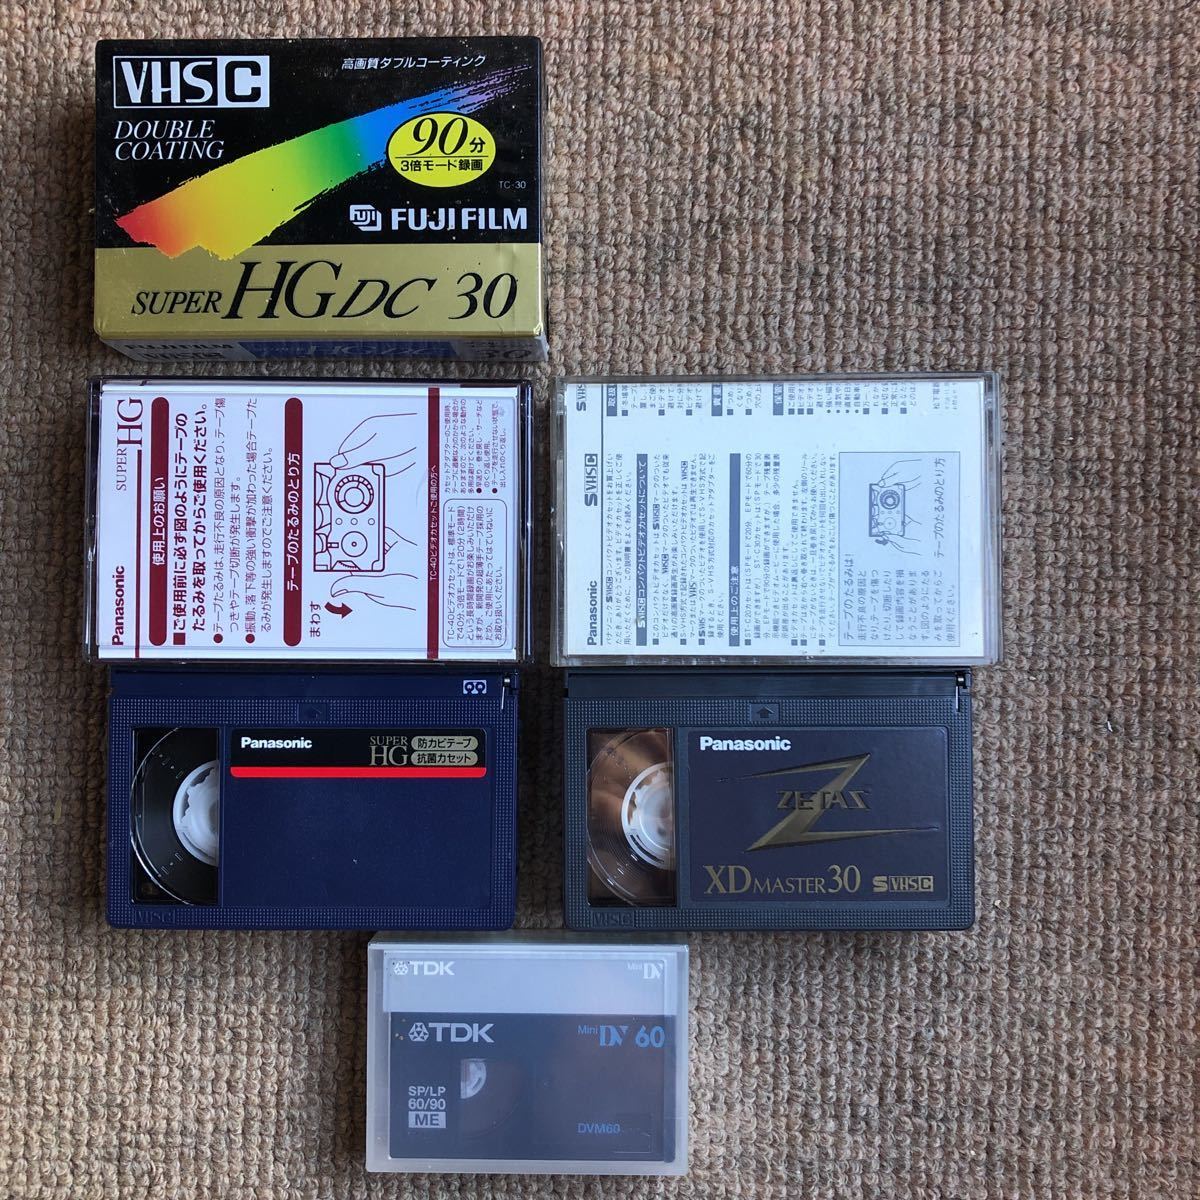  старый видео камера. лента VHS C( нераспечатанный Fuji пленка 30 минут. вскрыть 40 минут?) SVHS C вскрыть 30 минут.Mini DV60(TDK нераспечатанный ).VHS-C адаптор 